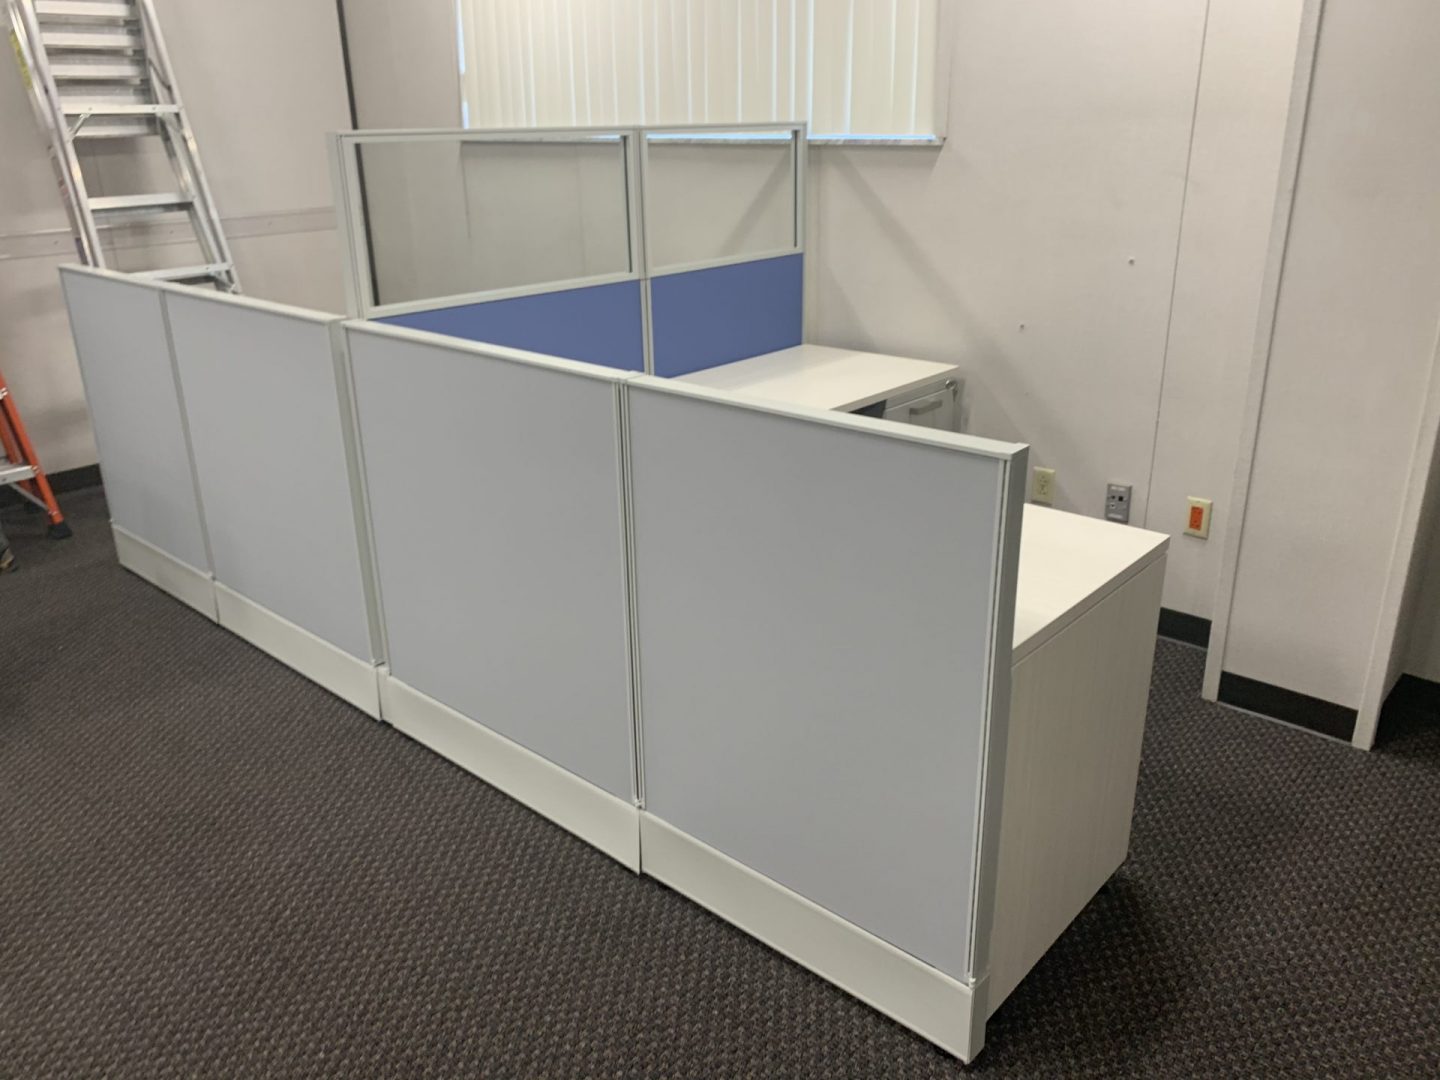 A white cubicle